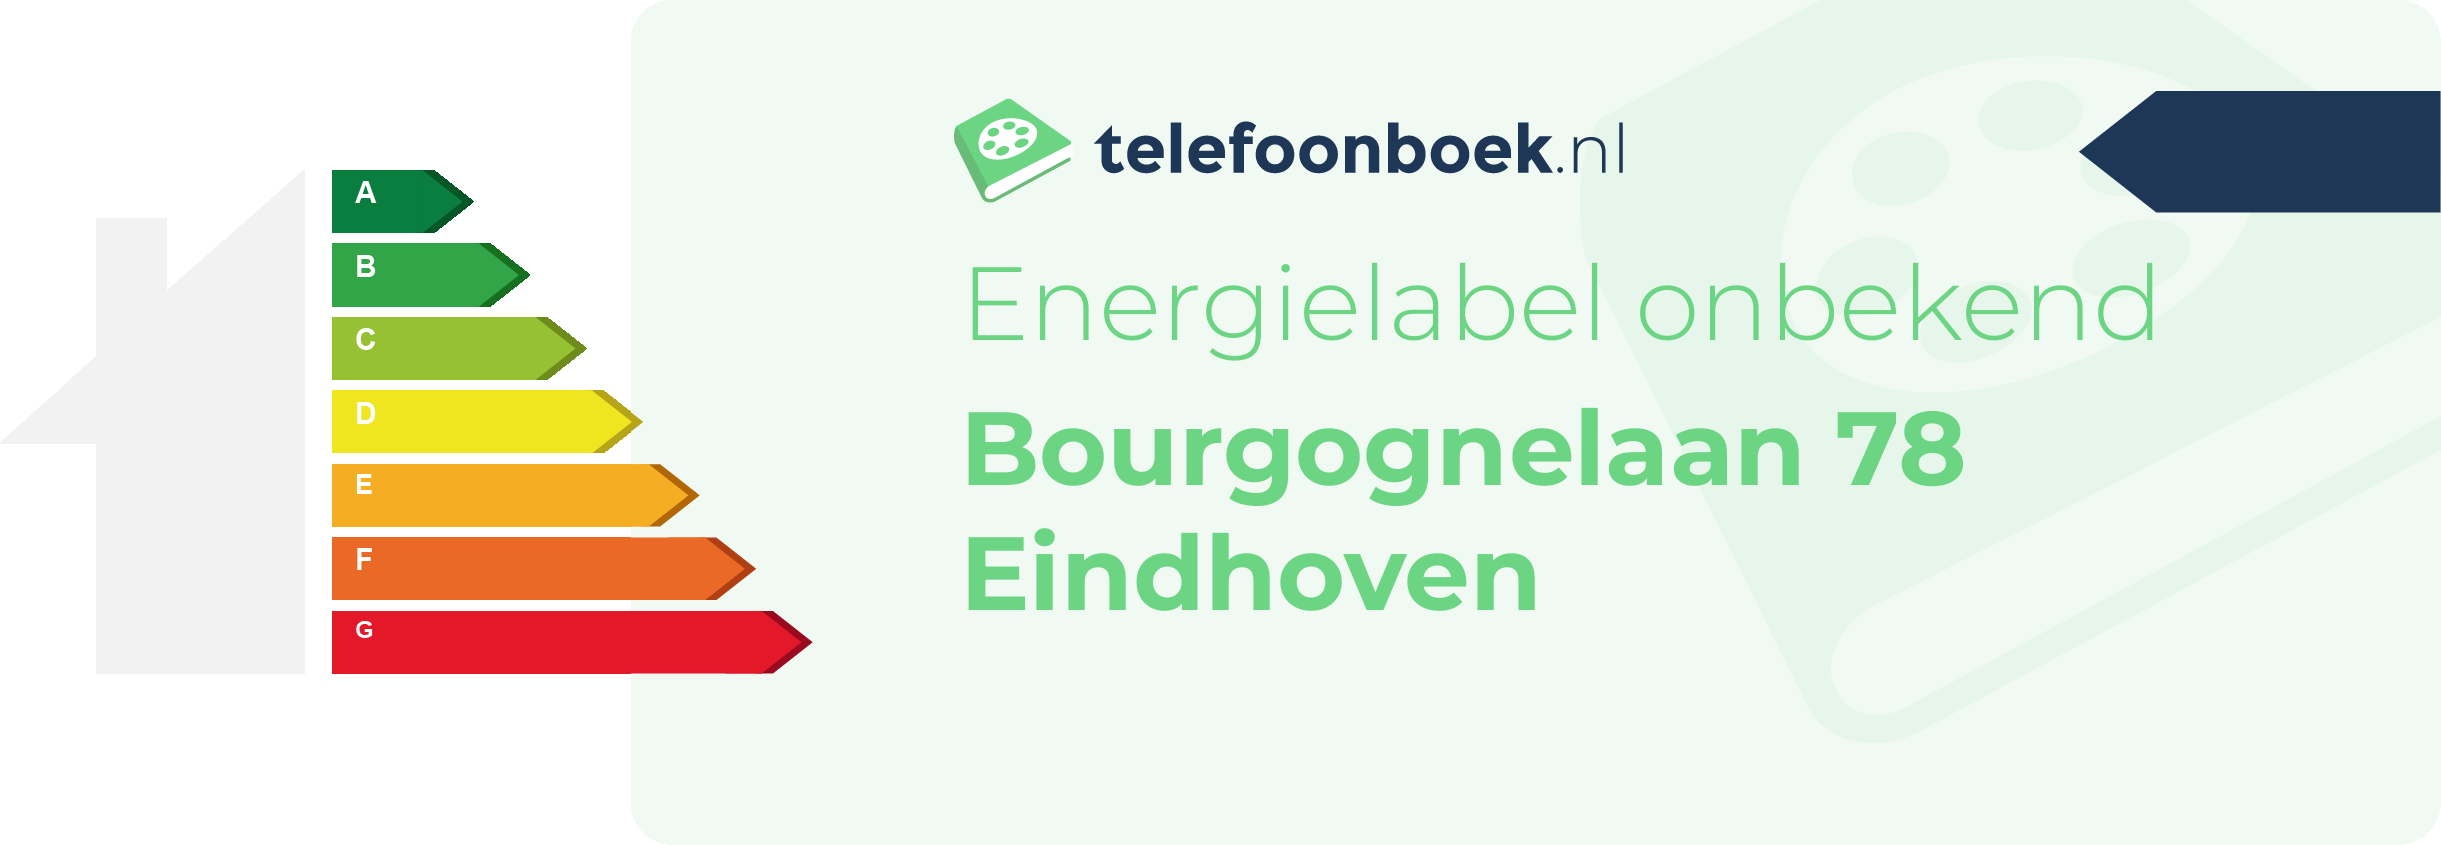 Energielabel Bourgognelaan 78 Eindhoven